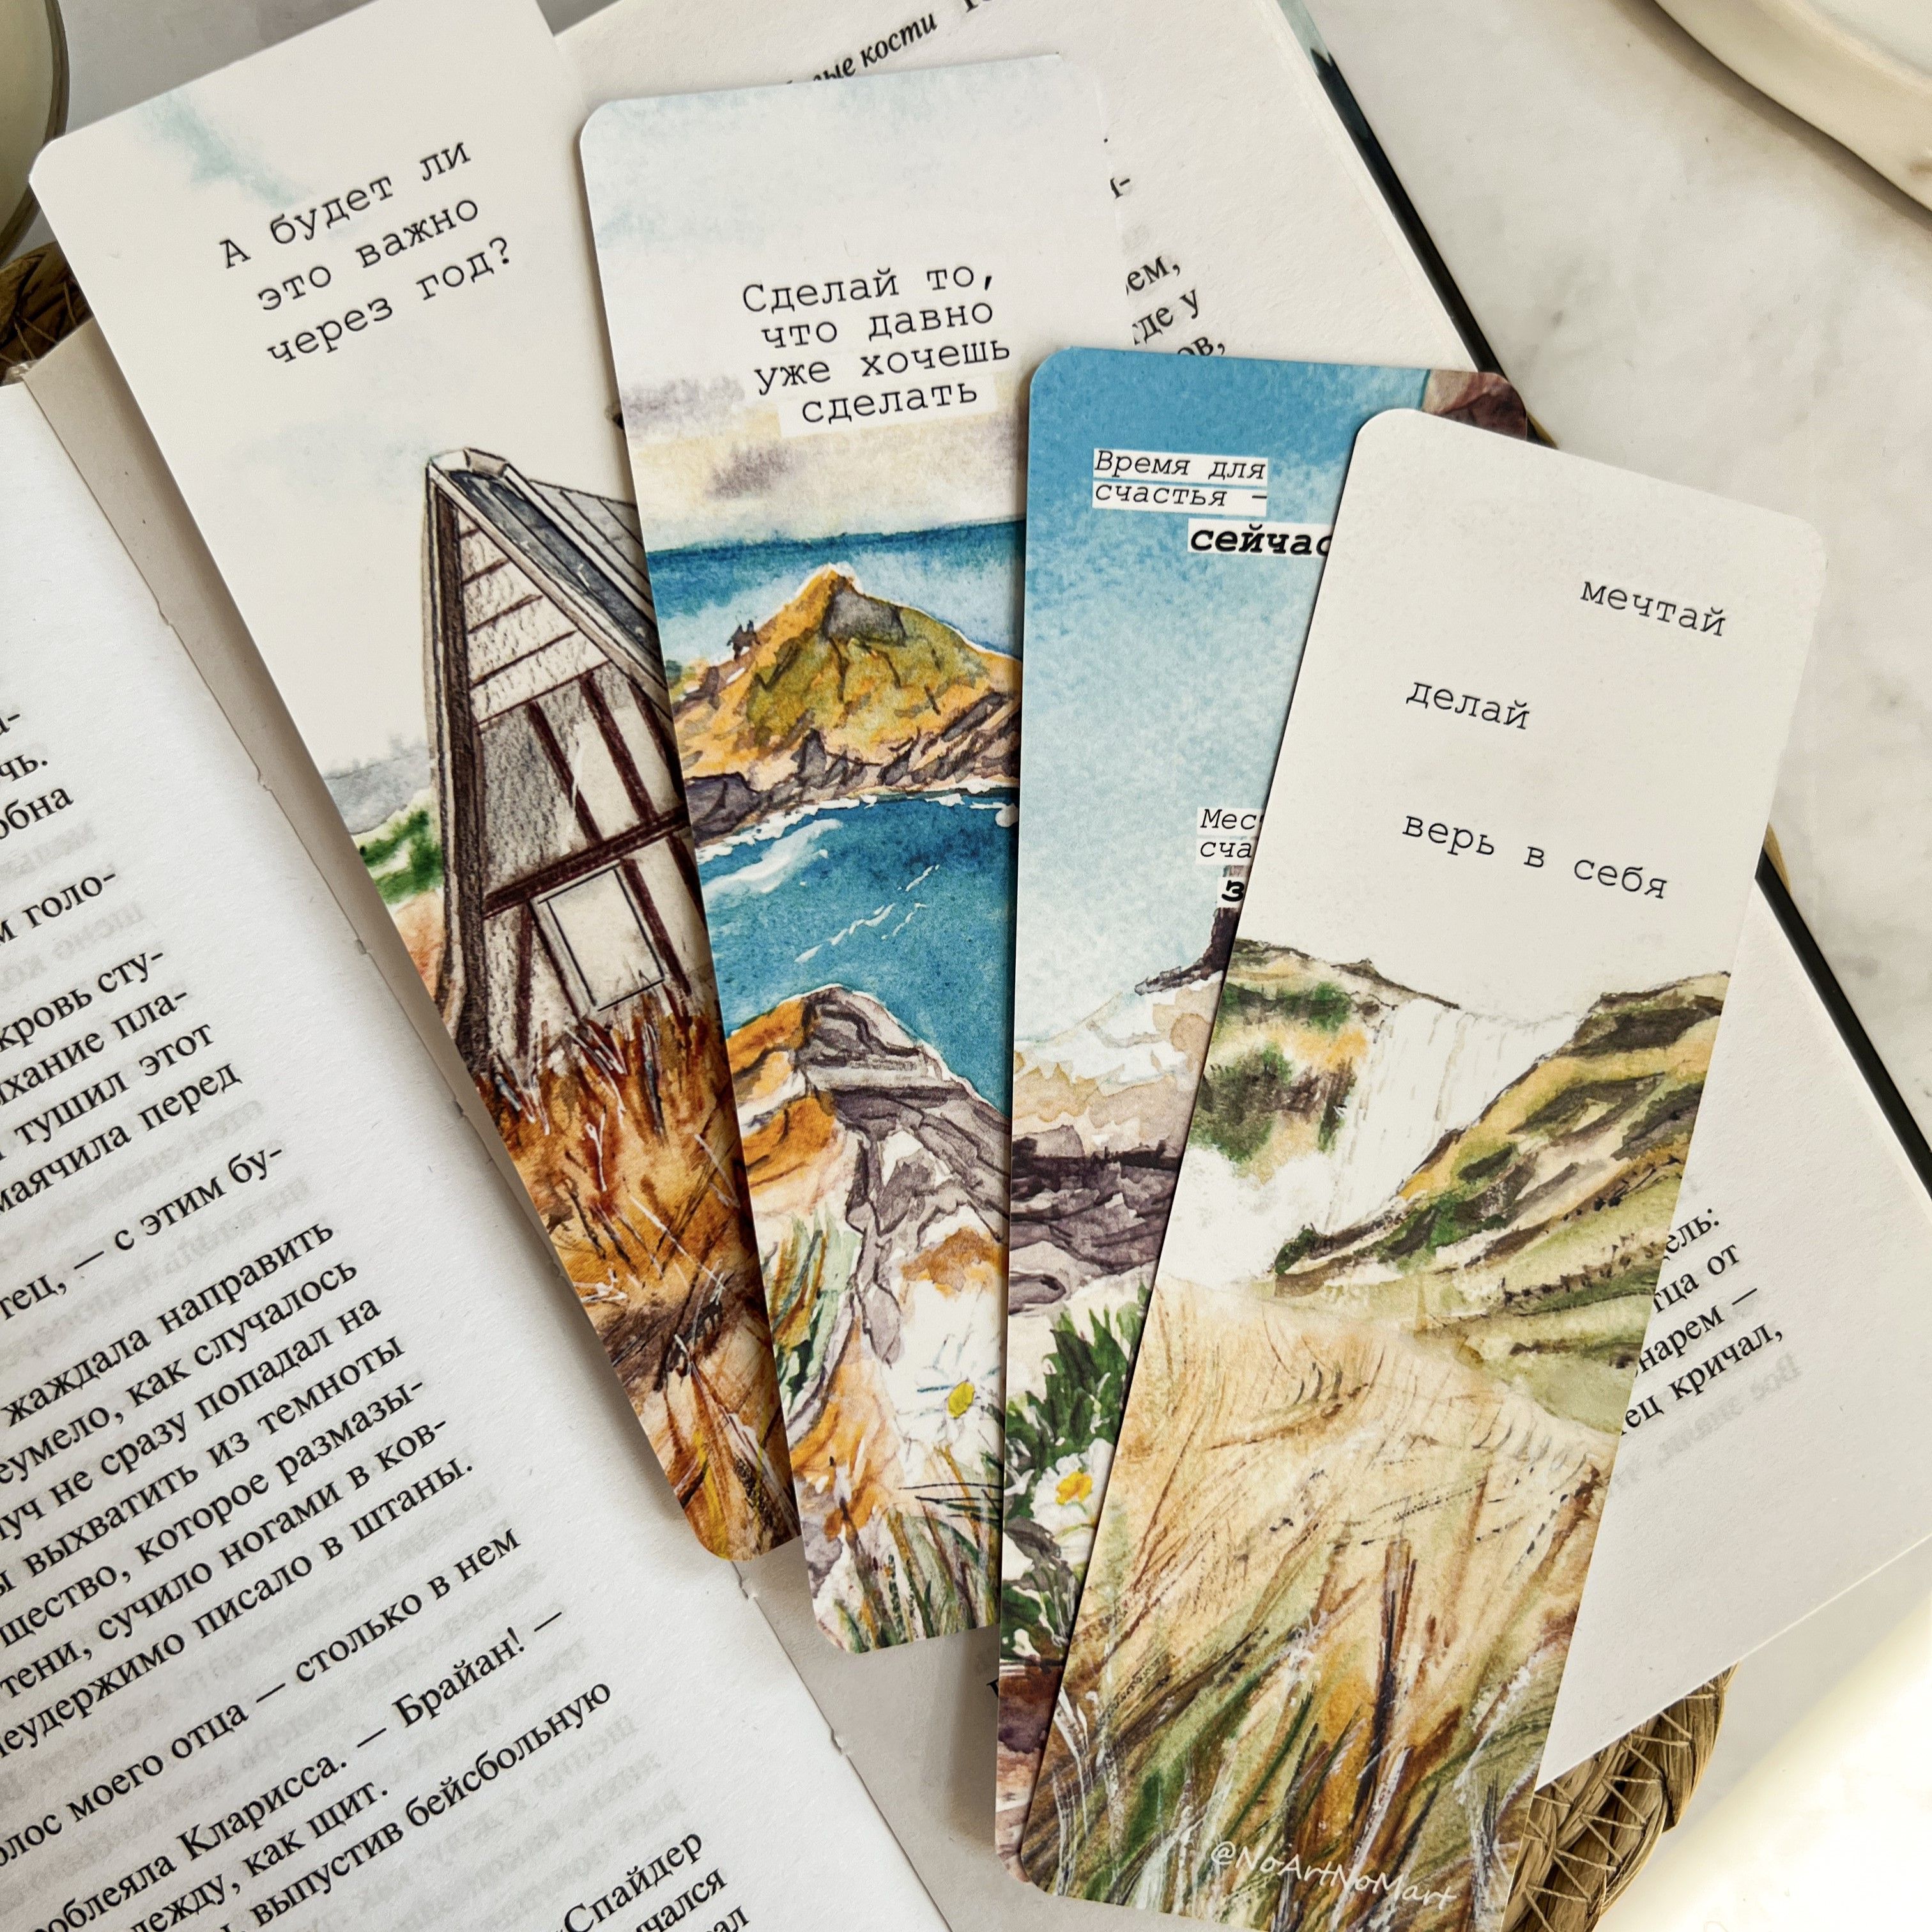 Закладки для книг своими руками — красивые и оригинальные закладки для любимых книг в обзоре!